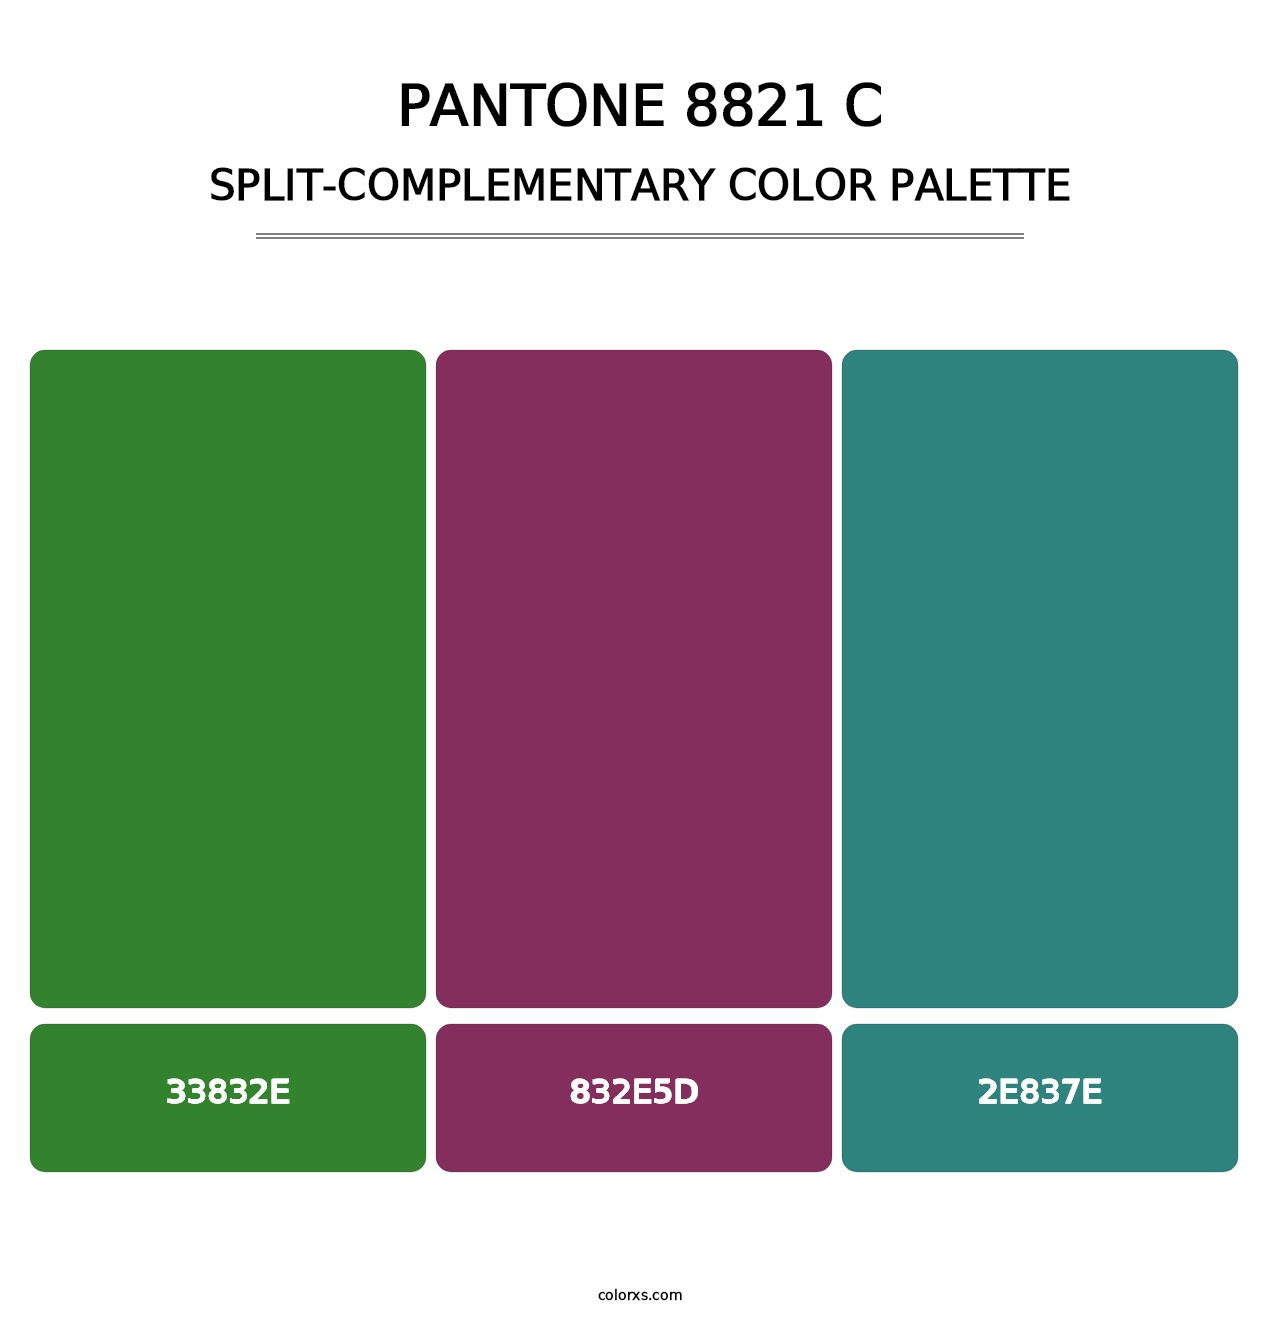 PANTONE 8821 C - Split-Complementary Color Palette